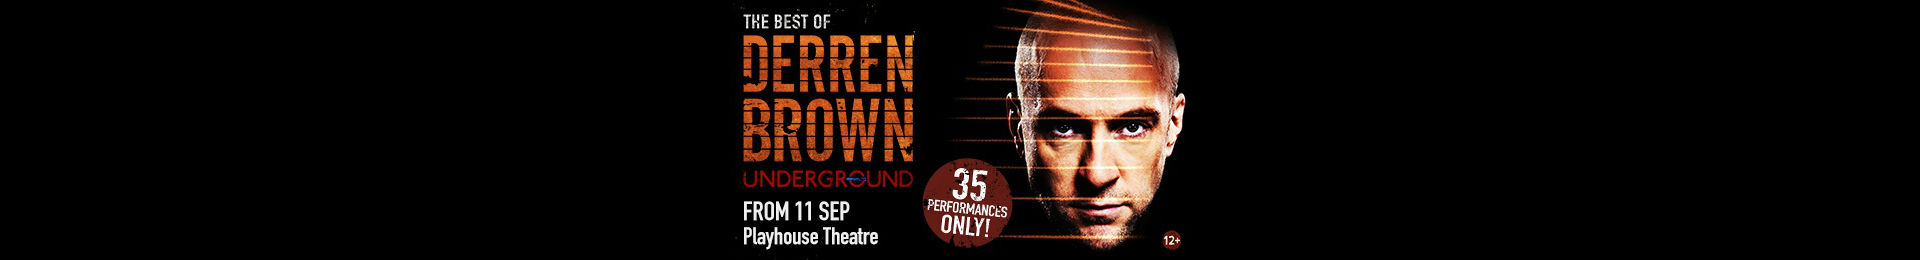 Derren Brown: Underground tickets